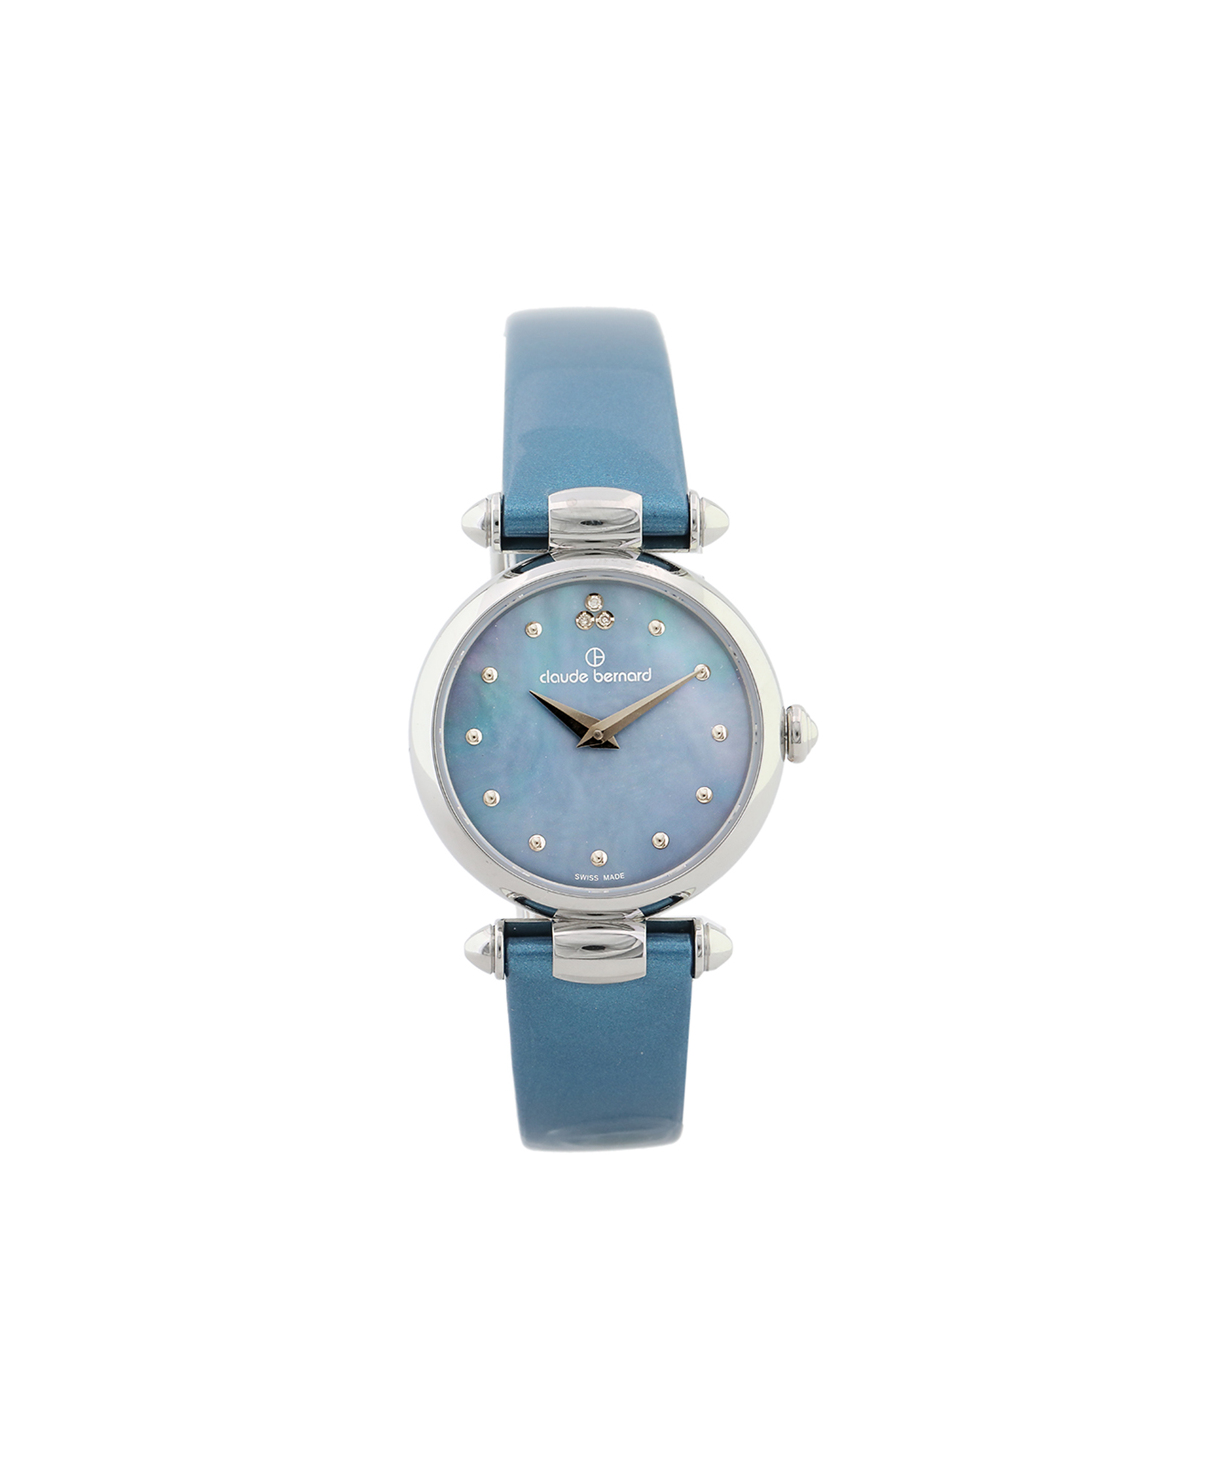 Wristwatch `Claude Bernard` 20501 3 NABUDN